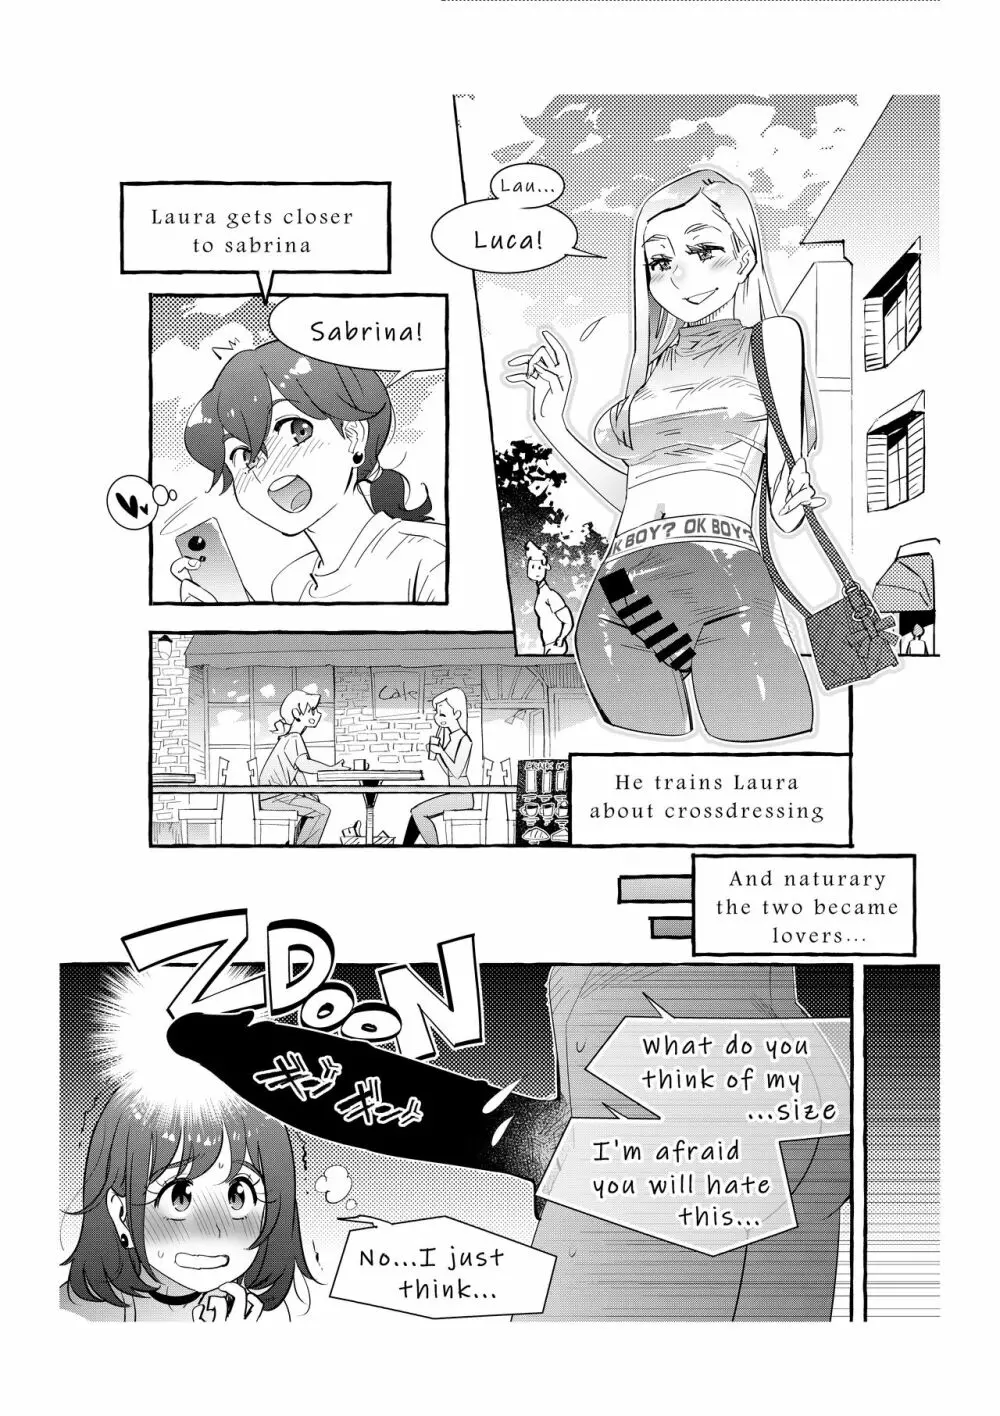 ファストエロ漫画集 2 16ページ